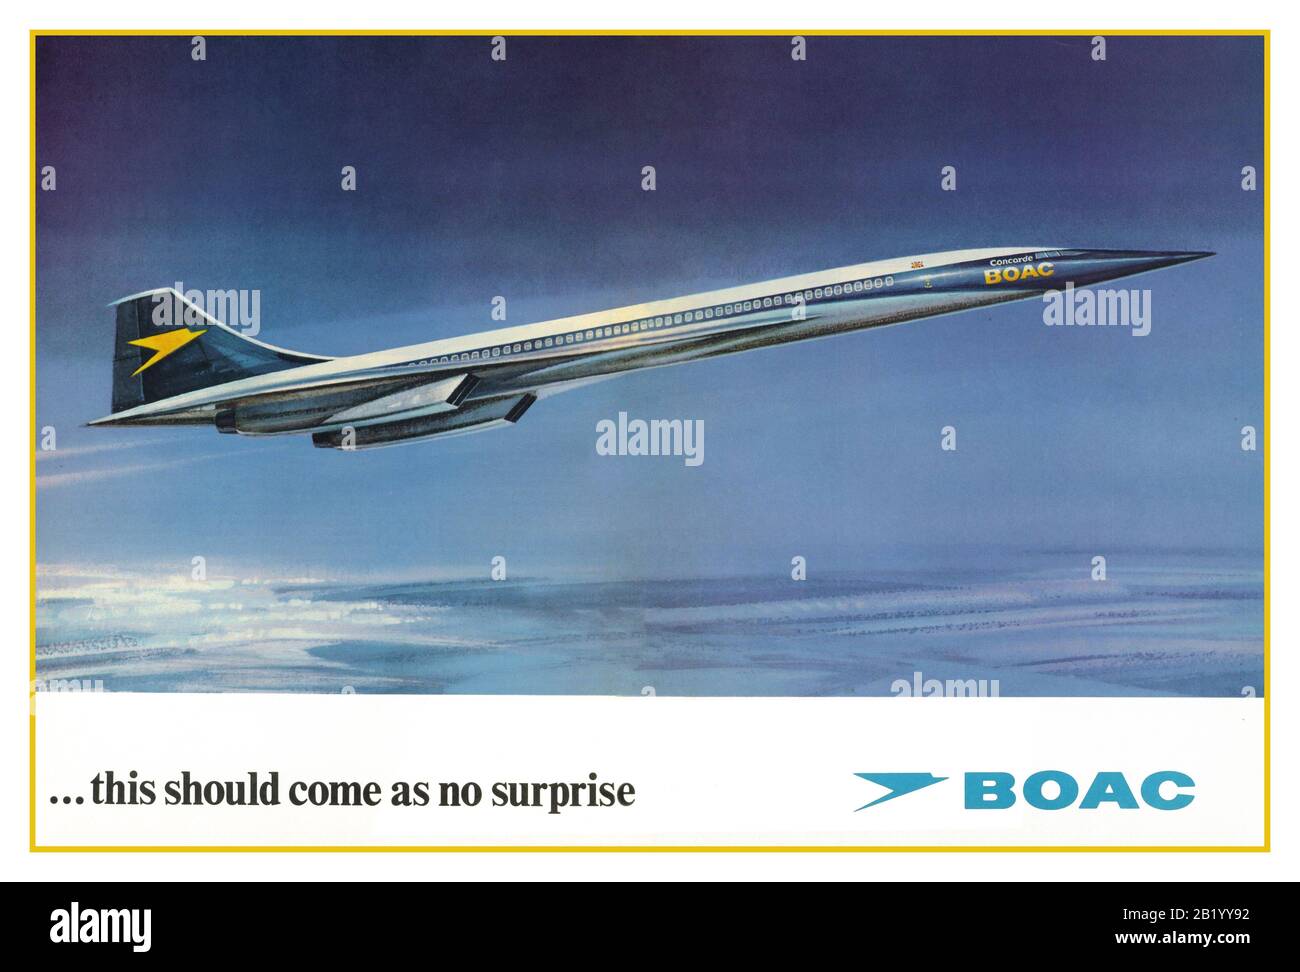 CONCORDE BOAC 70's Advertisement in historic BOAC livery el cartel publicitario de DPS BOAC se fusionó con BEA en 1974 y el primer Concorde británico voló bajo el nuevo livery de British Airways en 1975. "Esto no debería ser una sorpresa" Foto de stock